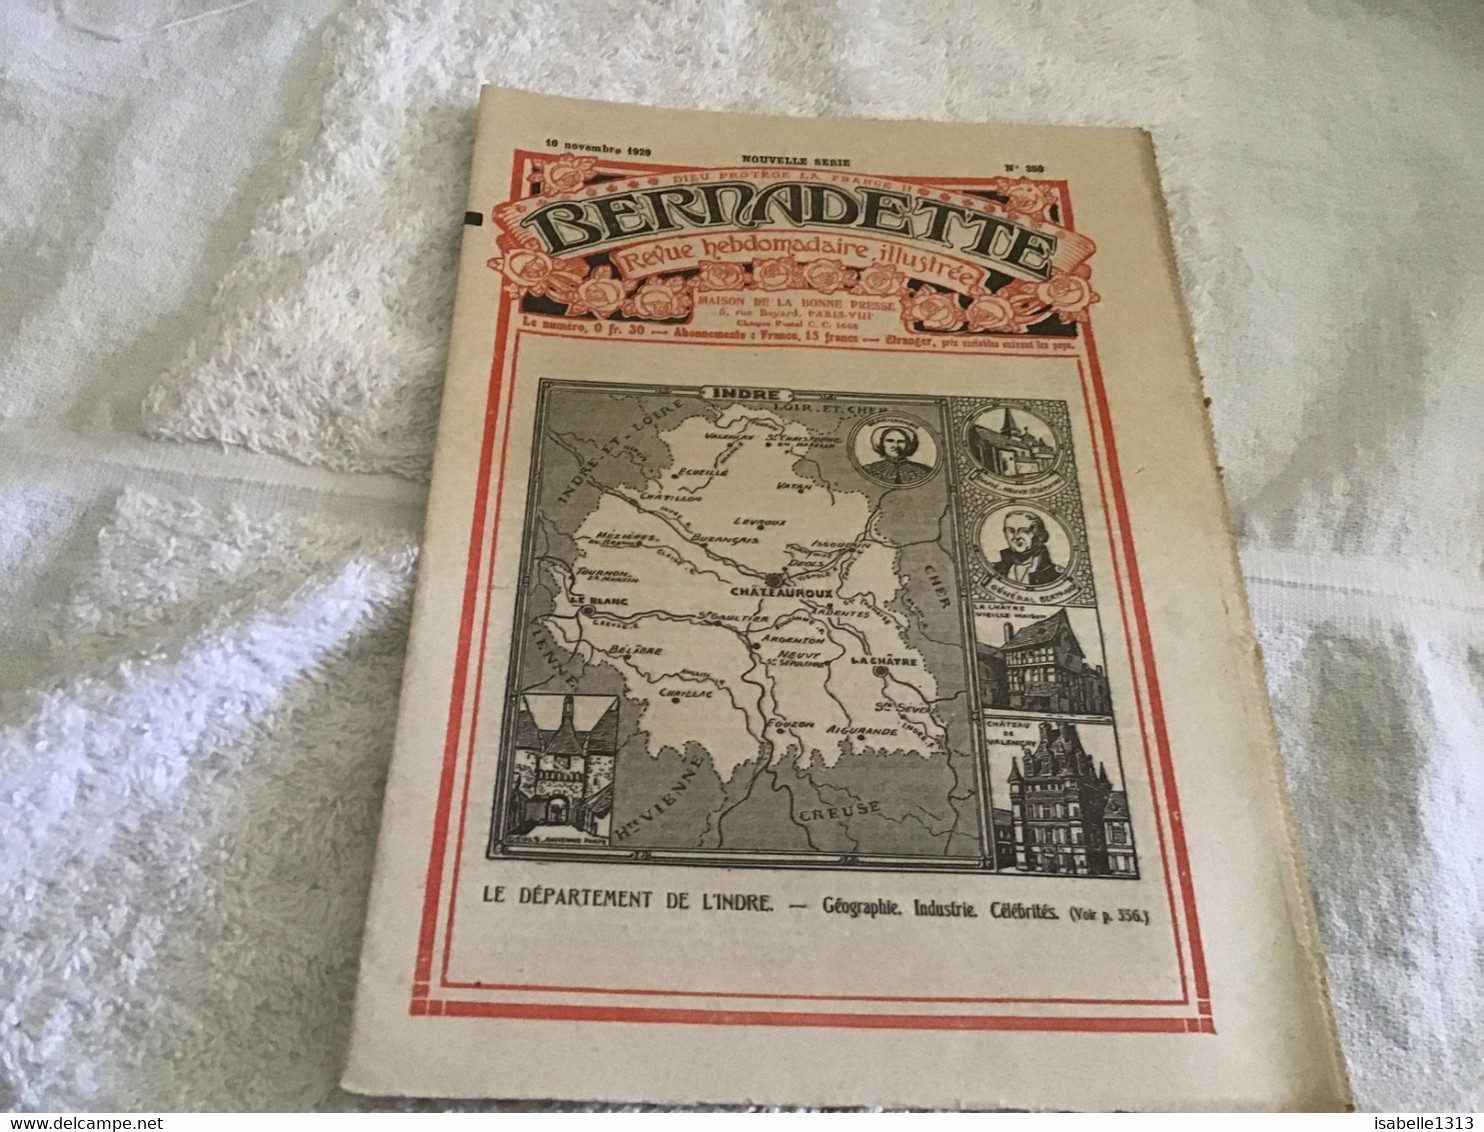 Bernadette Rare Revue Hebdomadaire Illustrée  Paris 1929 Indre L’Indre Géographie. Industrie Célébrités - Bernadette